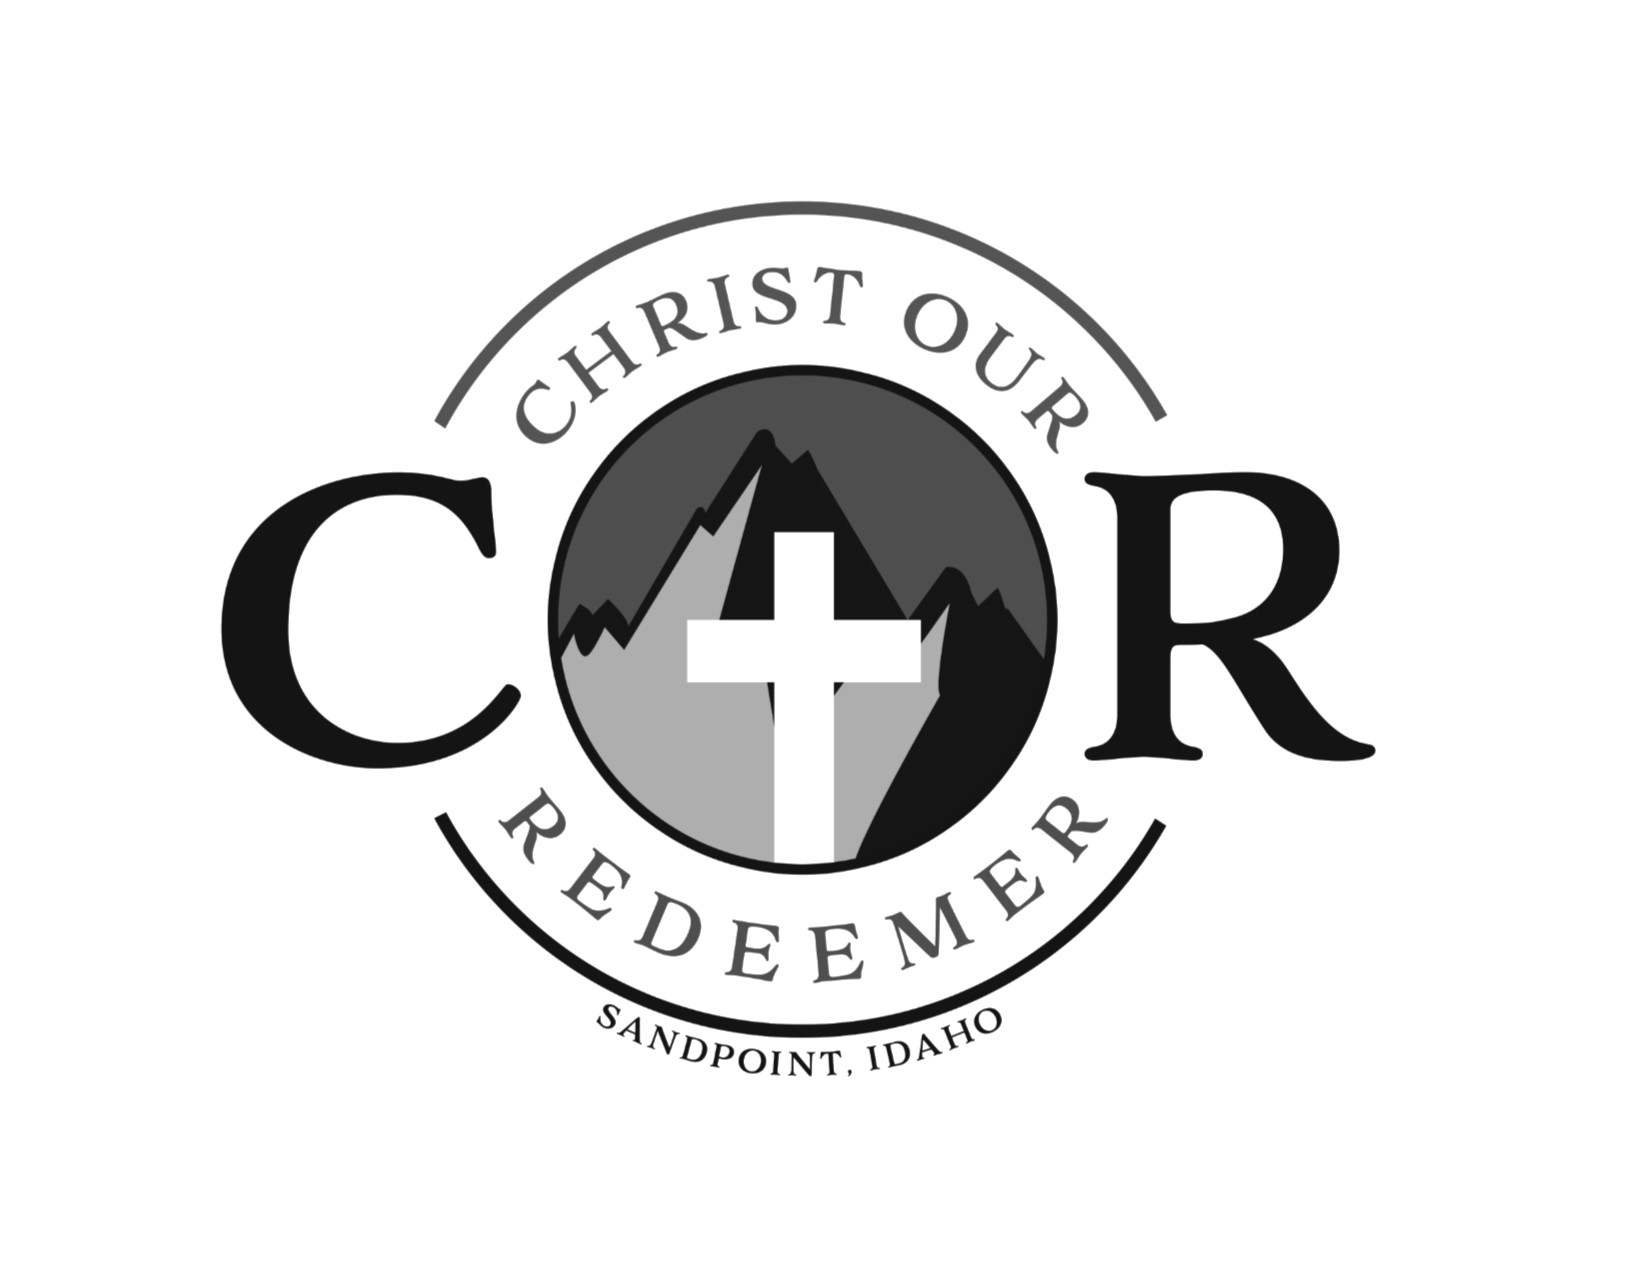 CHRIST OUR REDEEMER LUTHERAN CHURCH